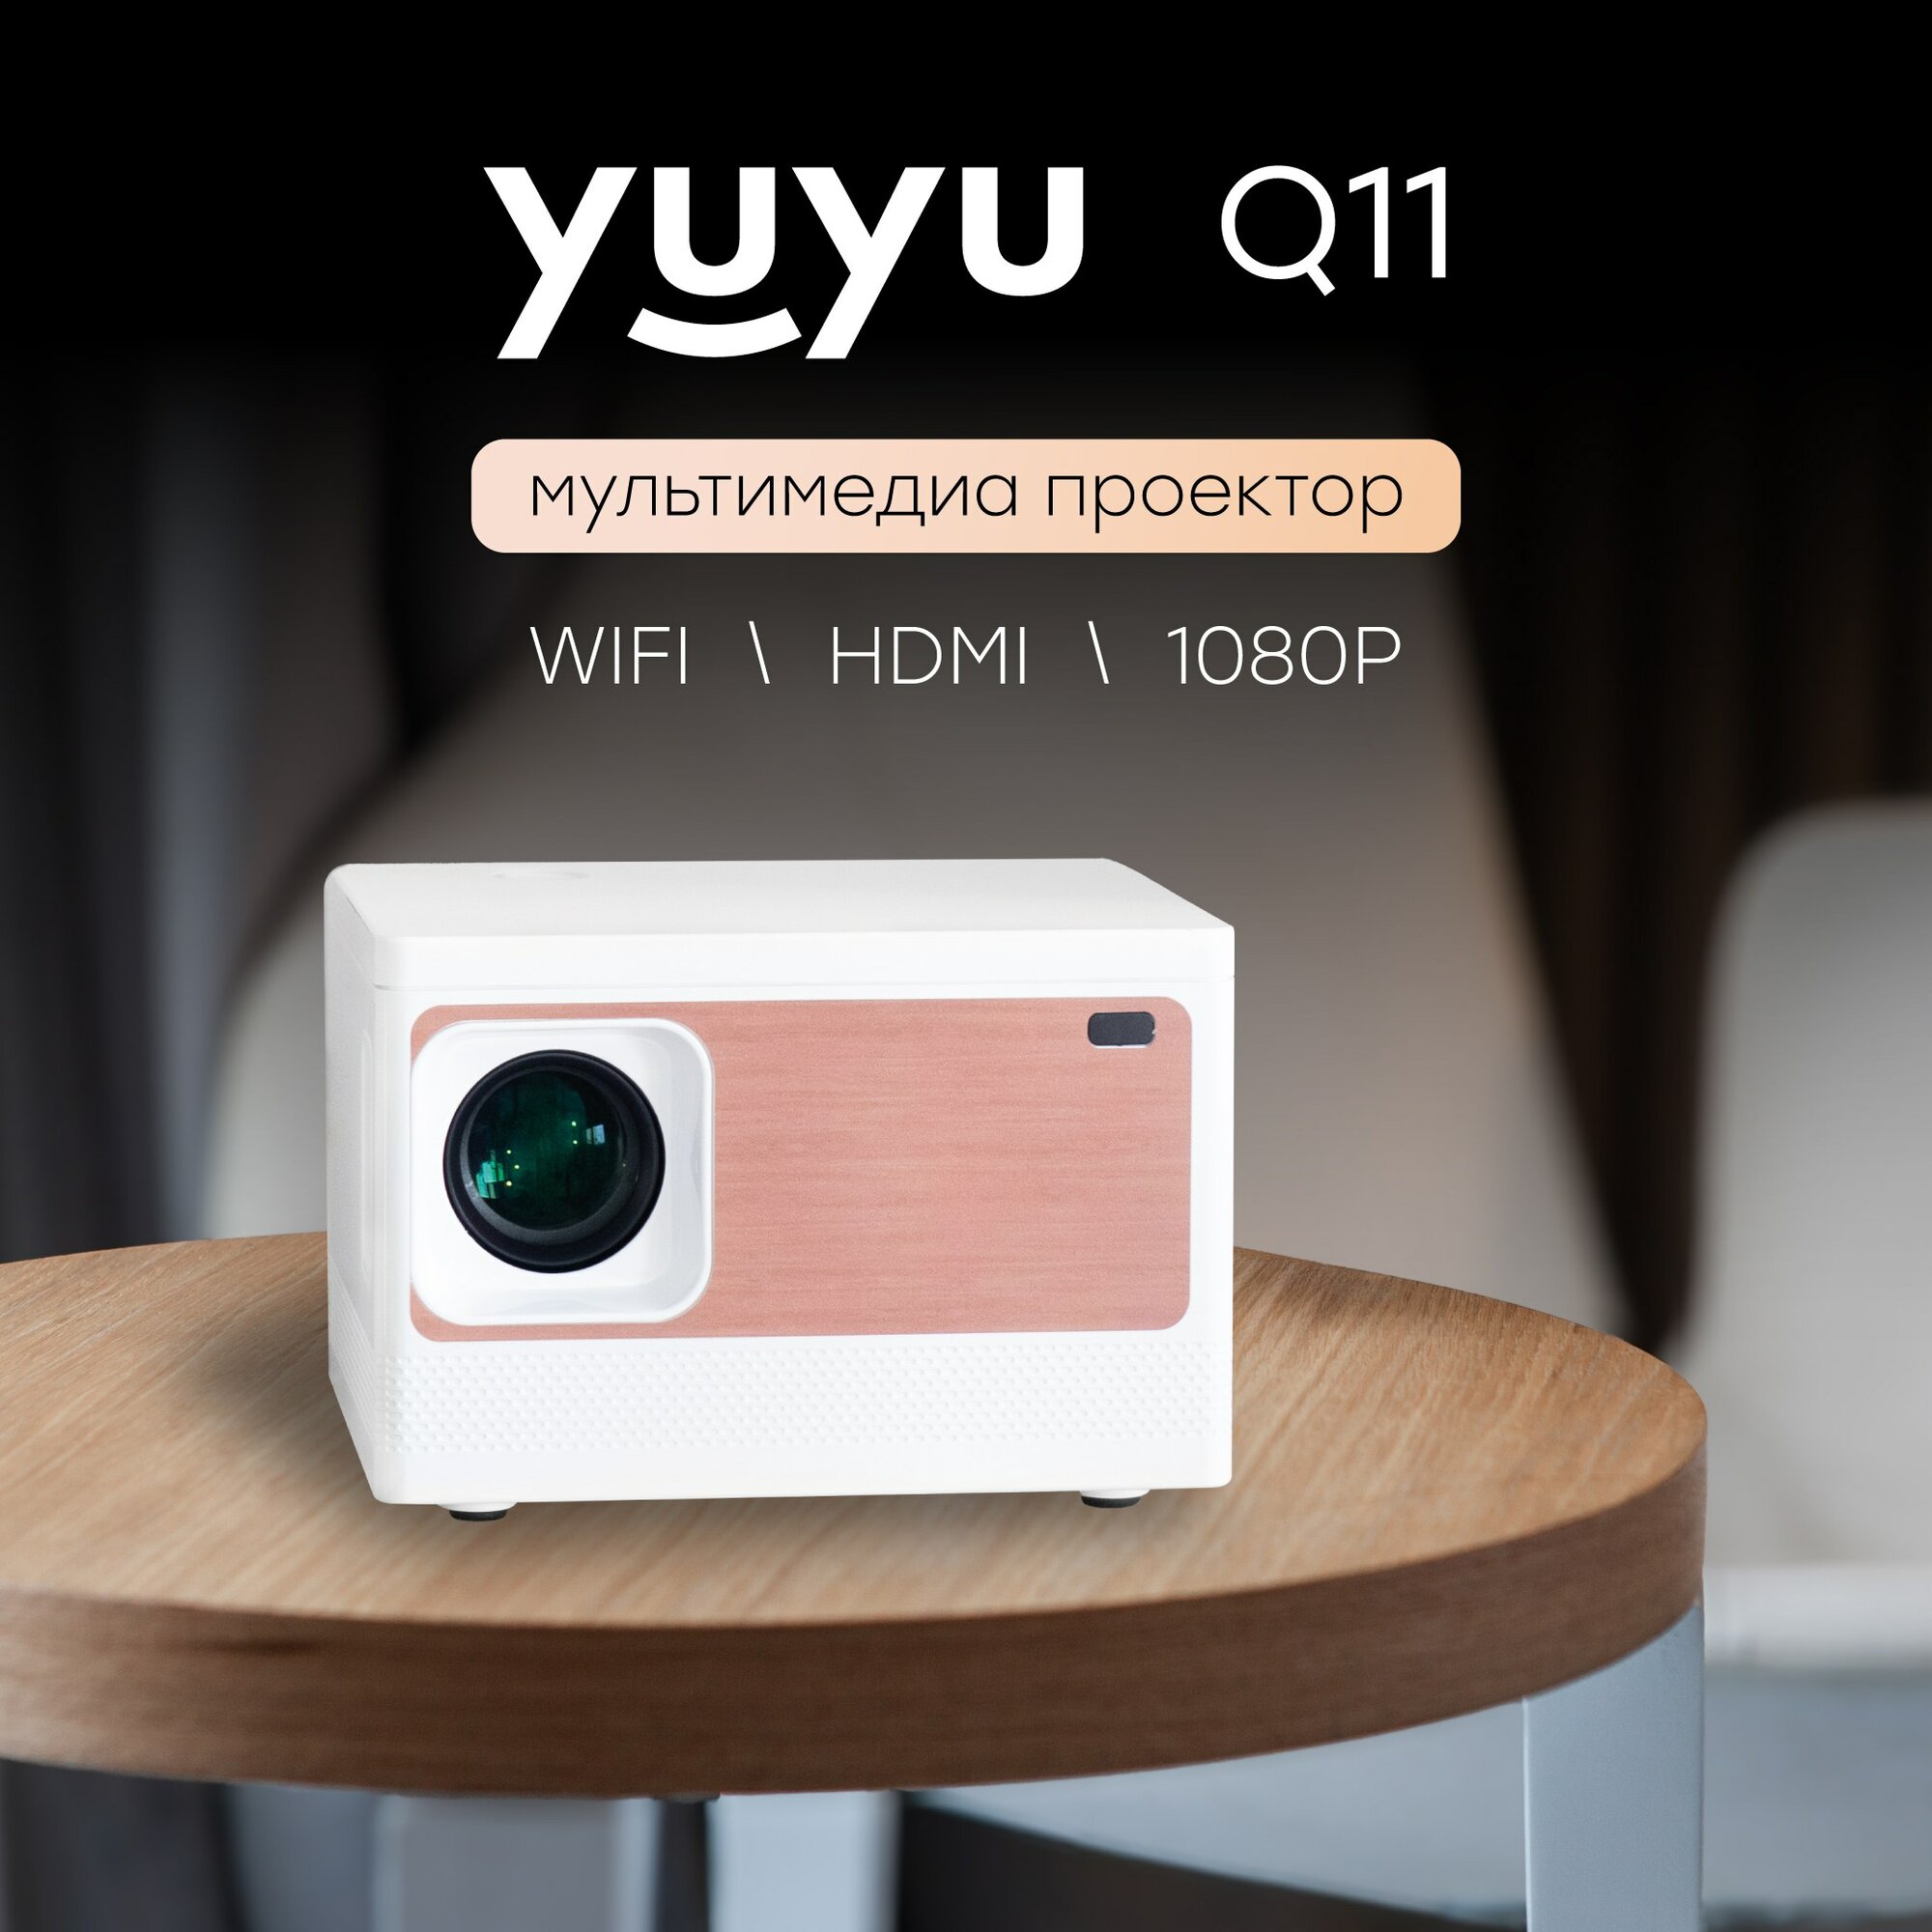 Проектор мультимедийный на системе Андройд Android, Wi-Fi, Кино проектор, проектор для фильмов, мини проектор YuYu